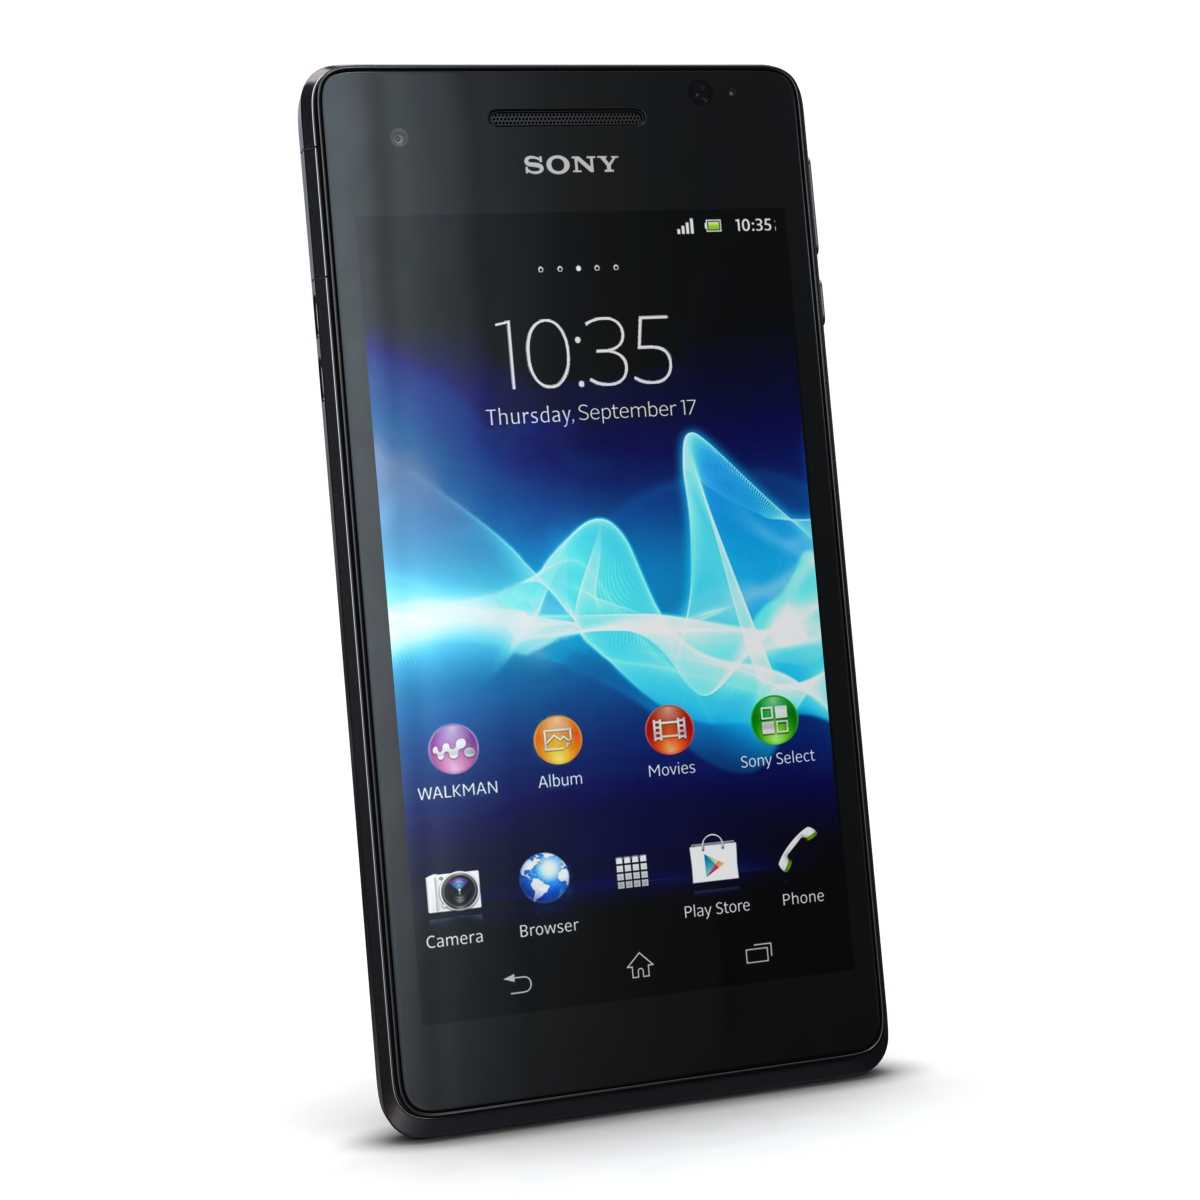 Мобильный телефон Sony Xperia TX - подробные характеристики обзоры видео фото Цены в интернет-магазинах где можно купить мобильный телефон Sony Xperia TX